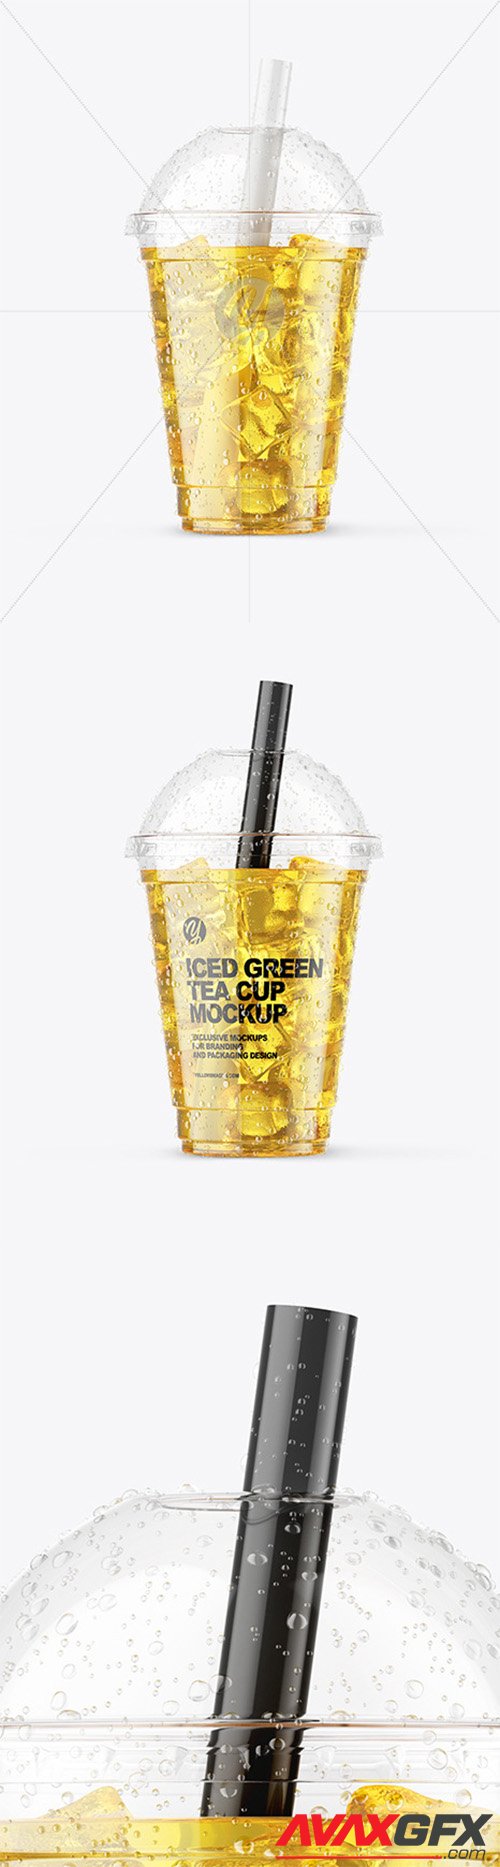 Iced Green Tea Cup Mockup 64934